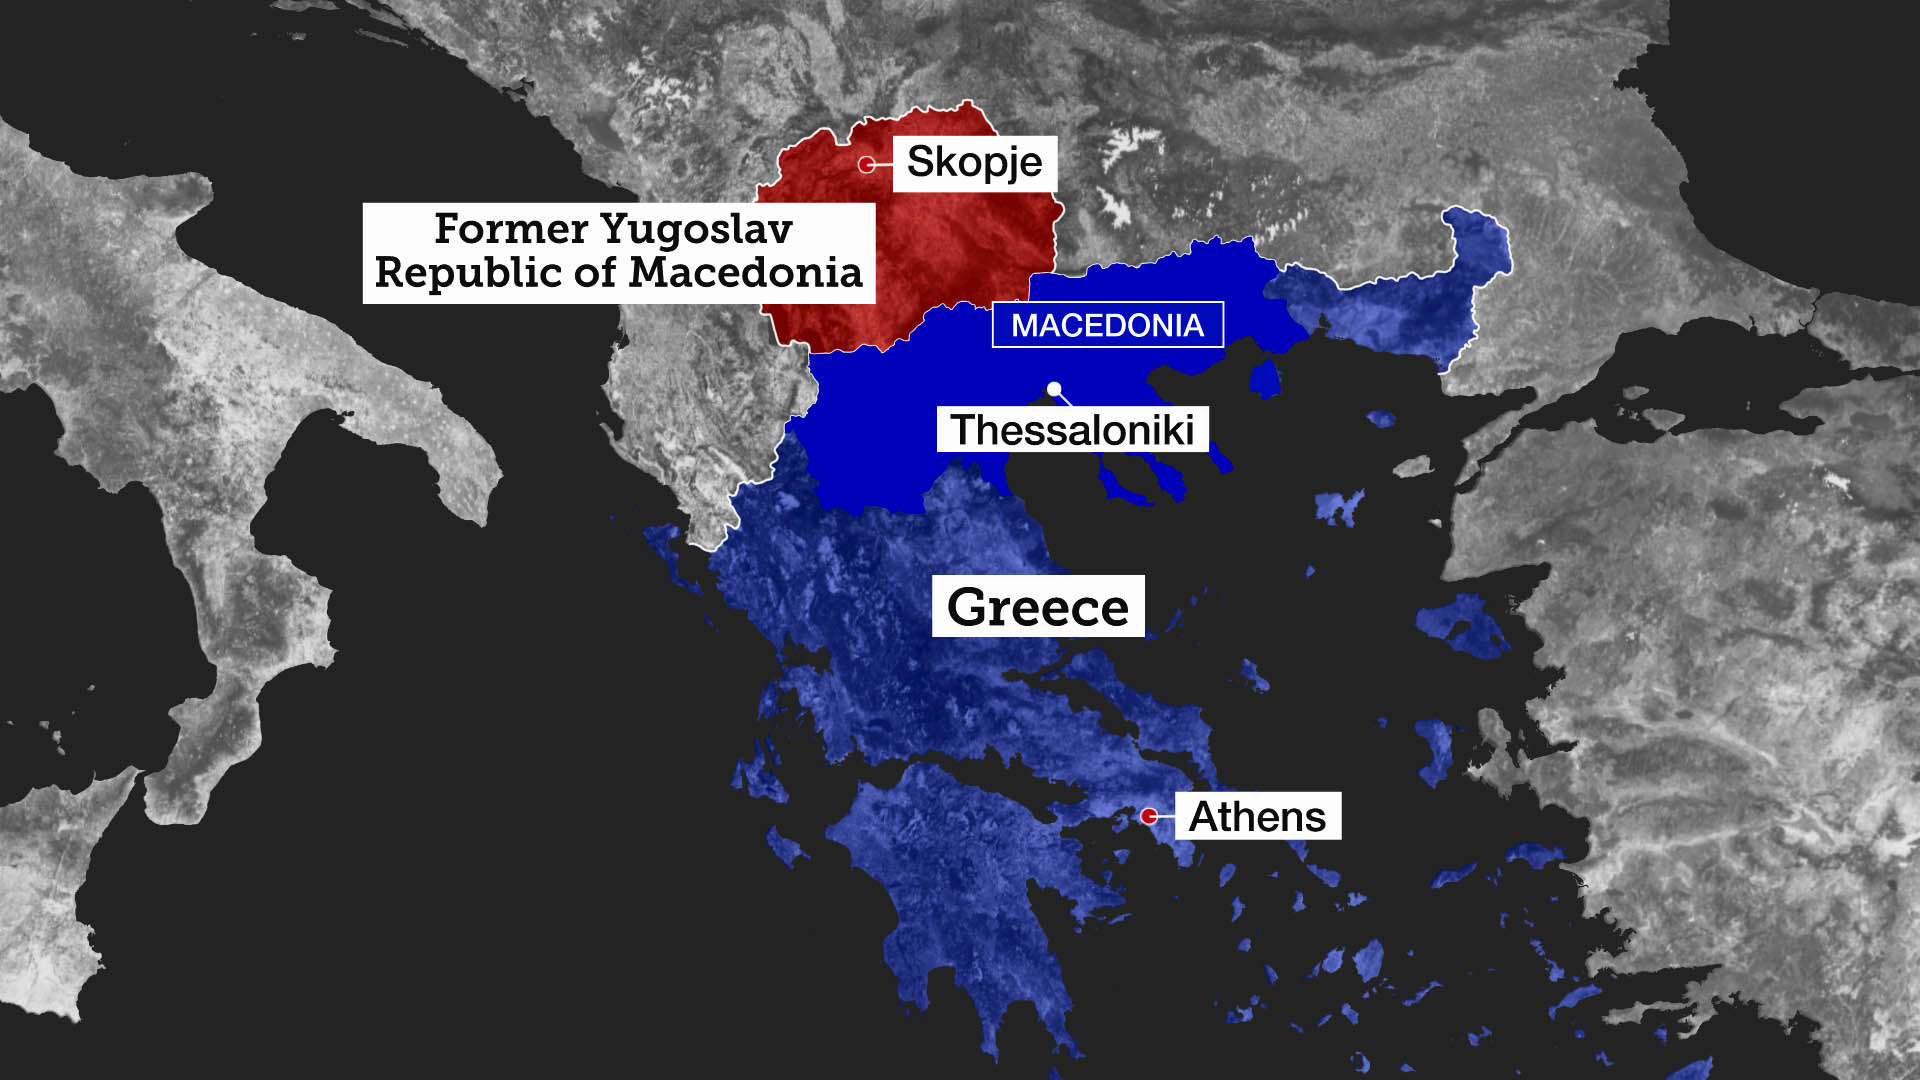 Î‘Ï€Î¿Ï„Î­Î»ÎµÏƒÎ¼Î± ÎµÎ¹ÎºÏŒÎ½Î±Ï‚ Î³Î¹Î± greece and republic of macedonia map